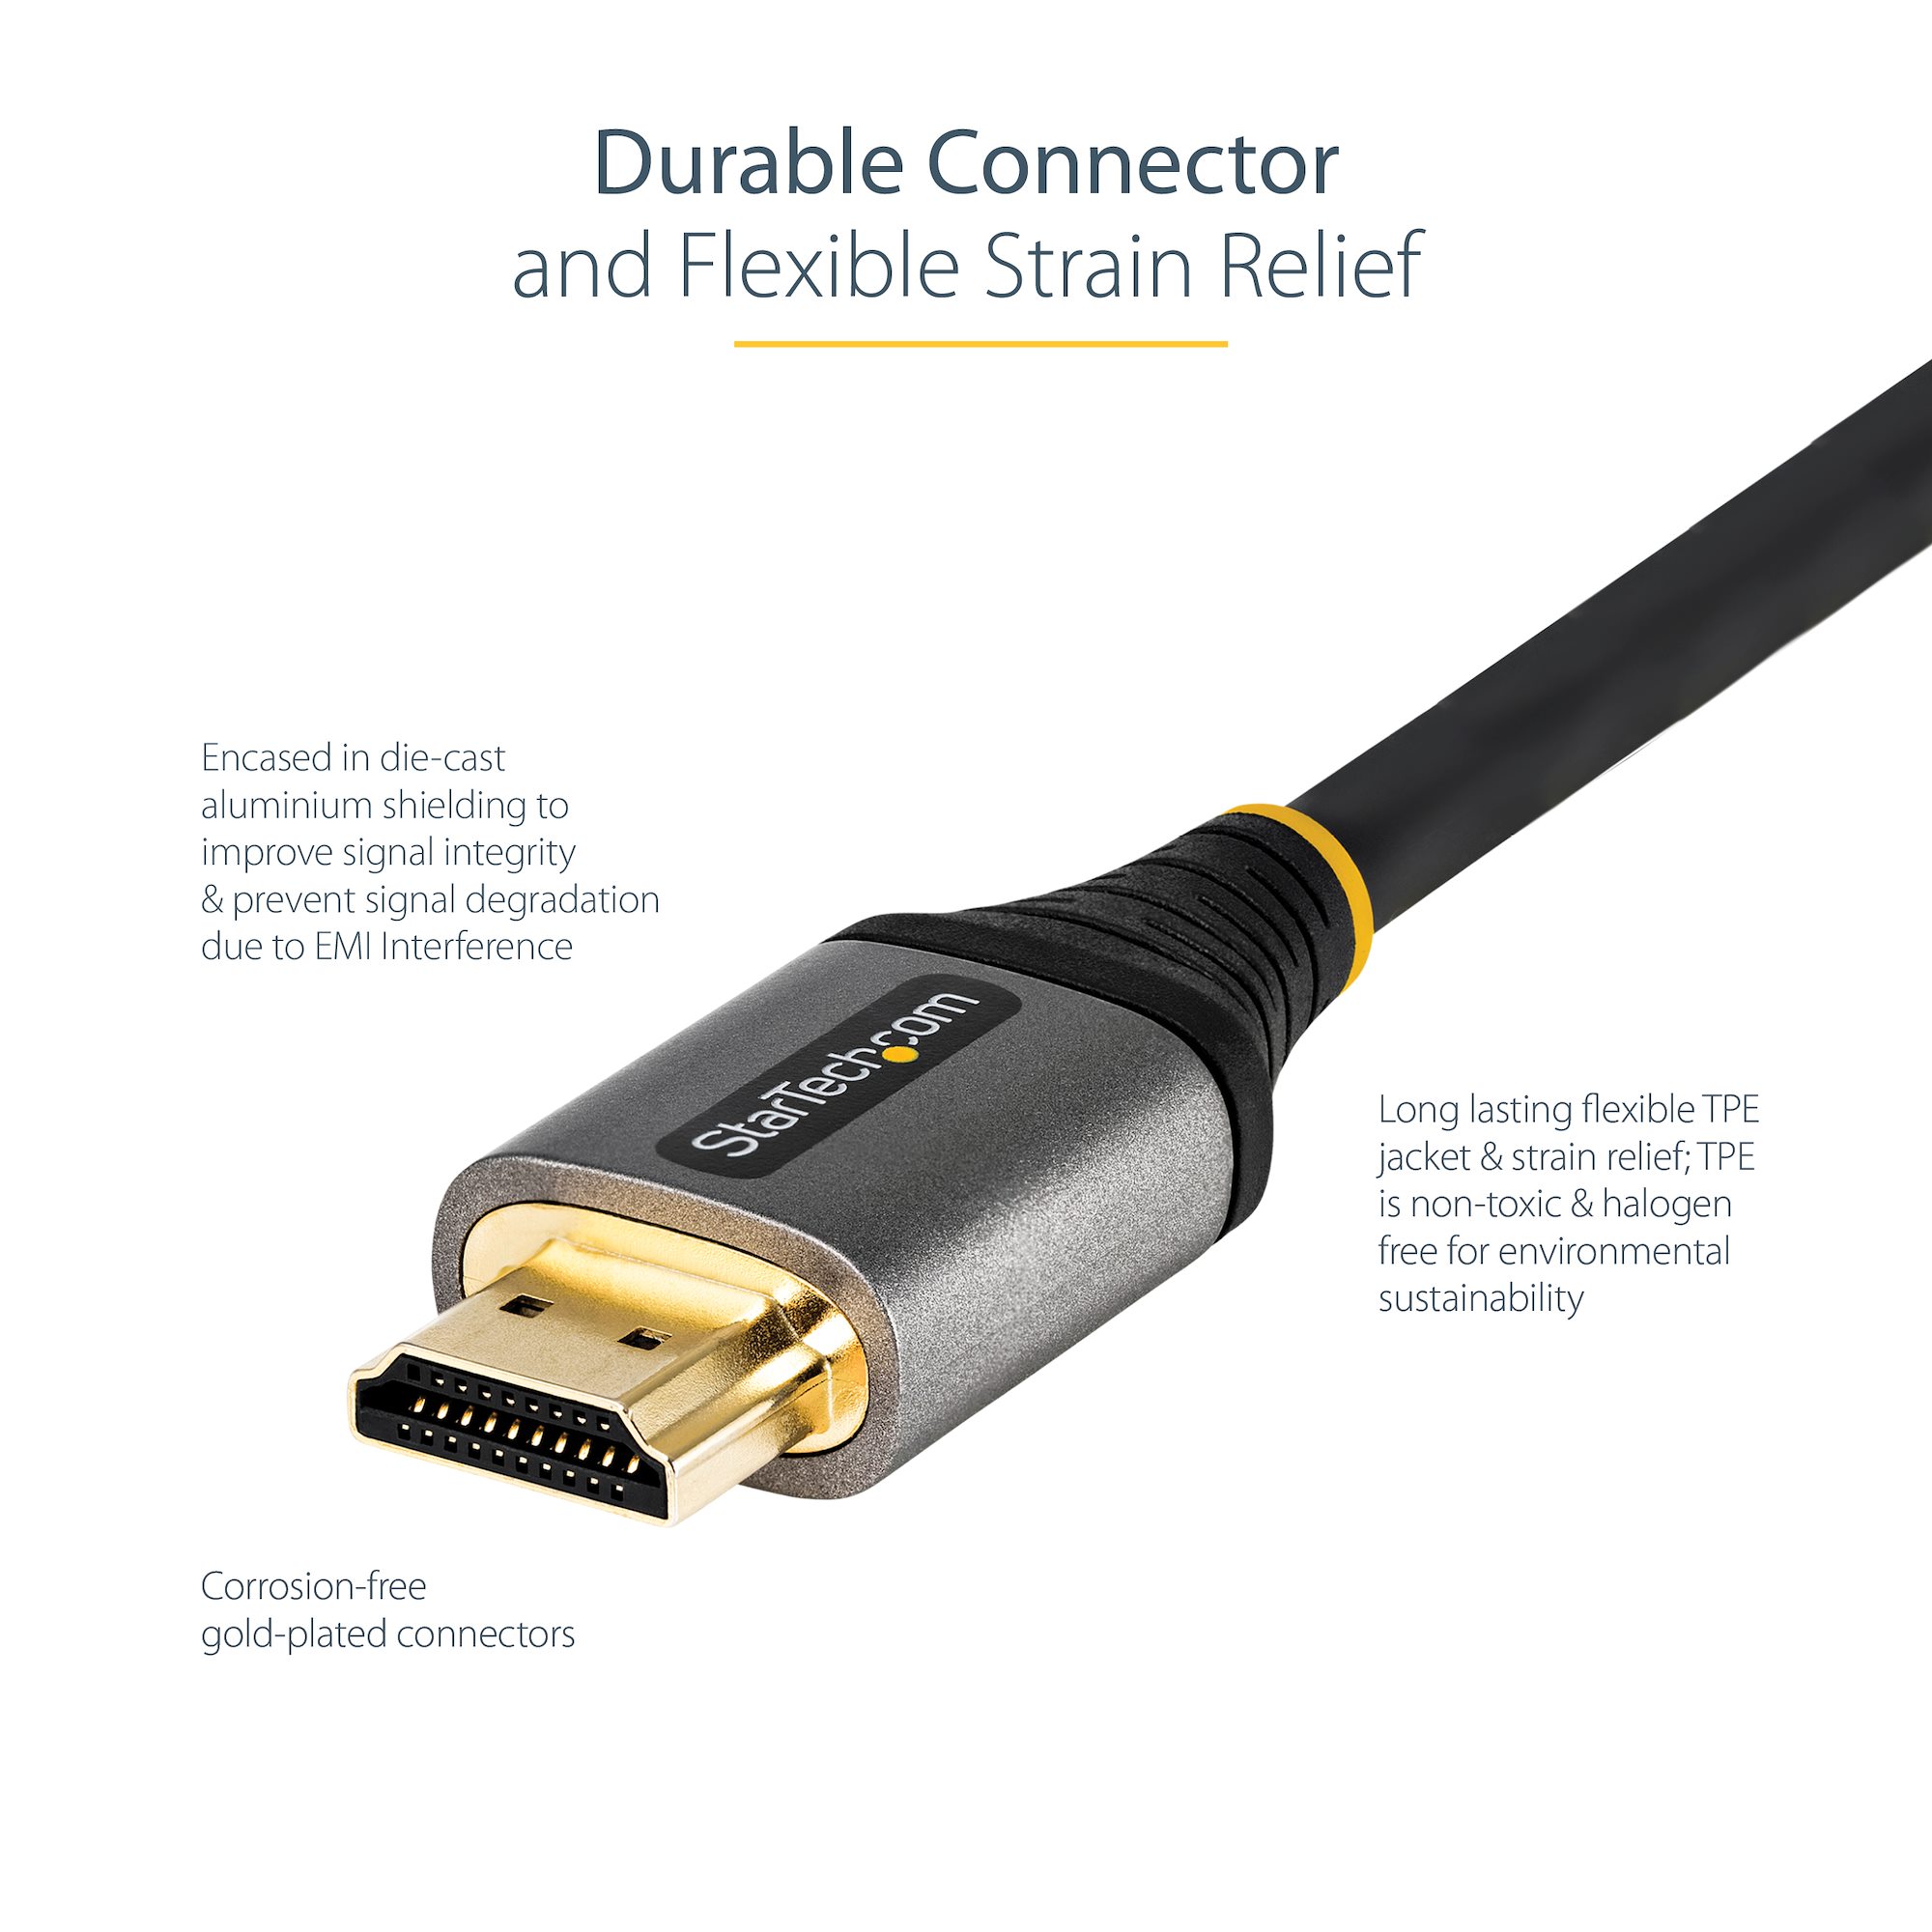 Câble HDMI 2.0 Premium Certifié - 4K 3m - Câbles HDMI® et